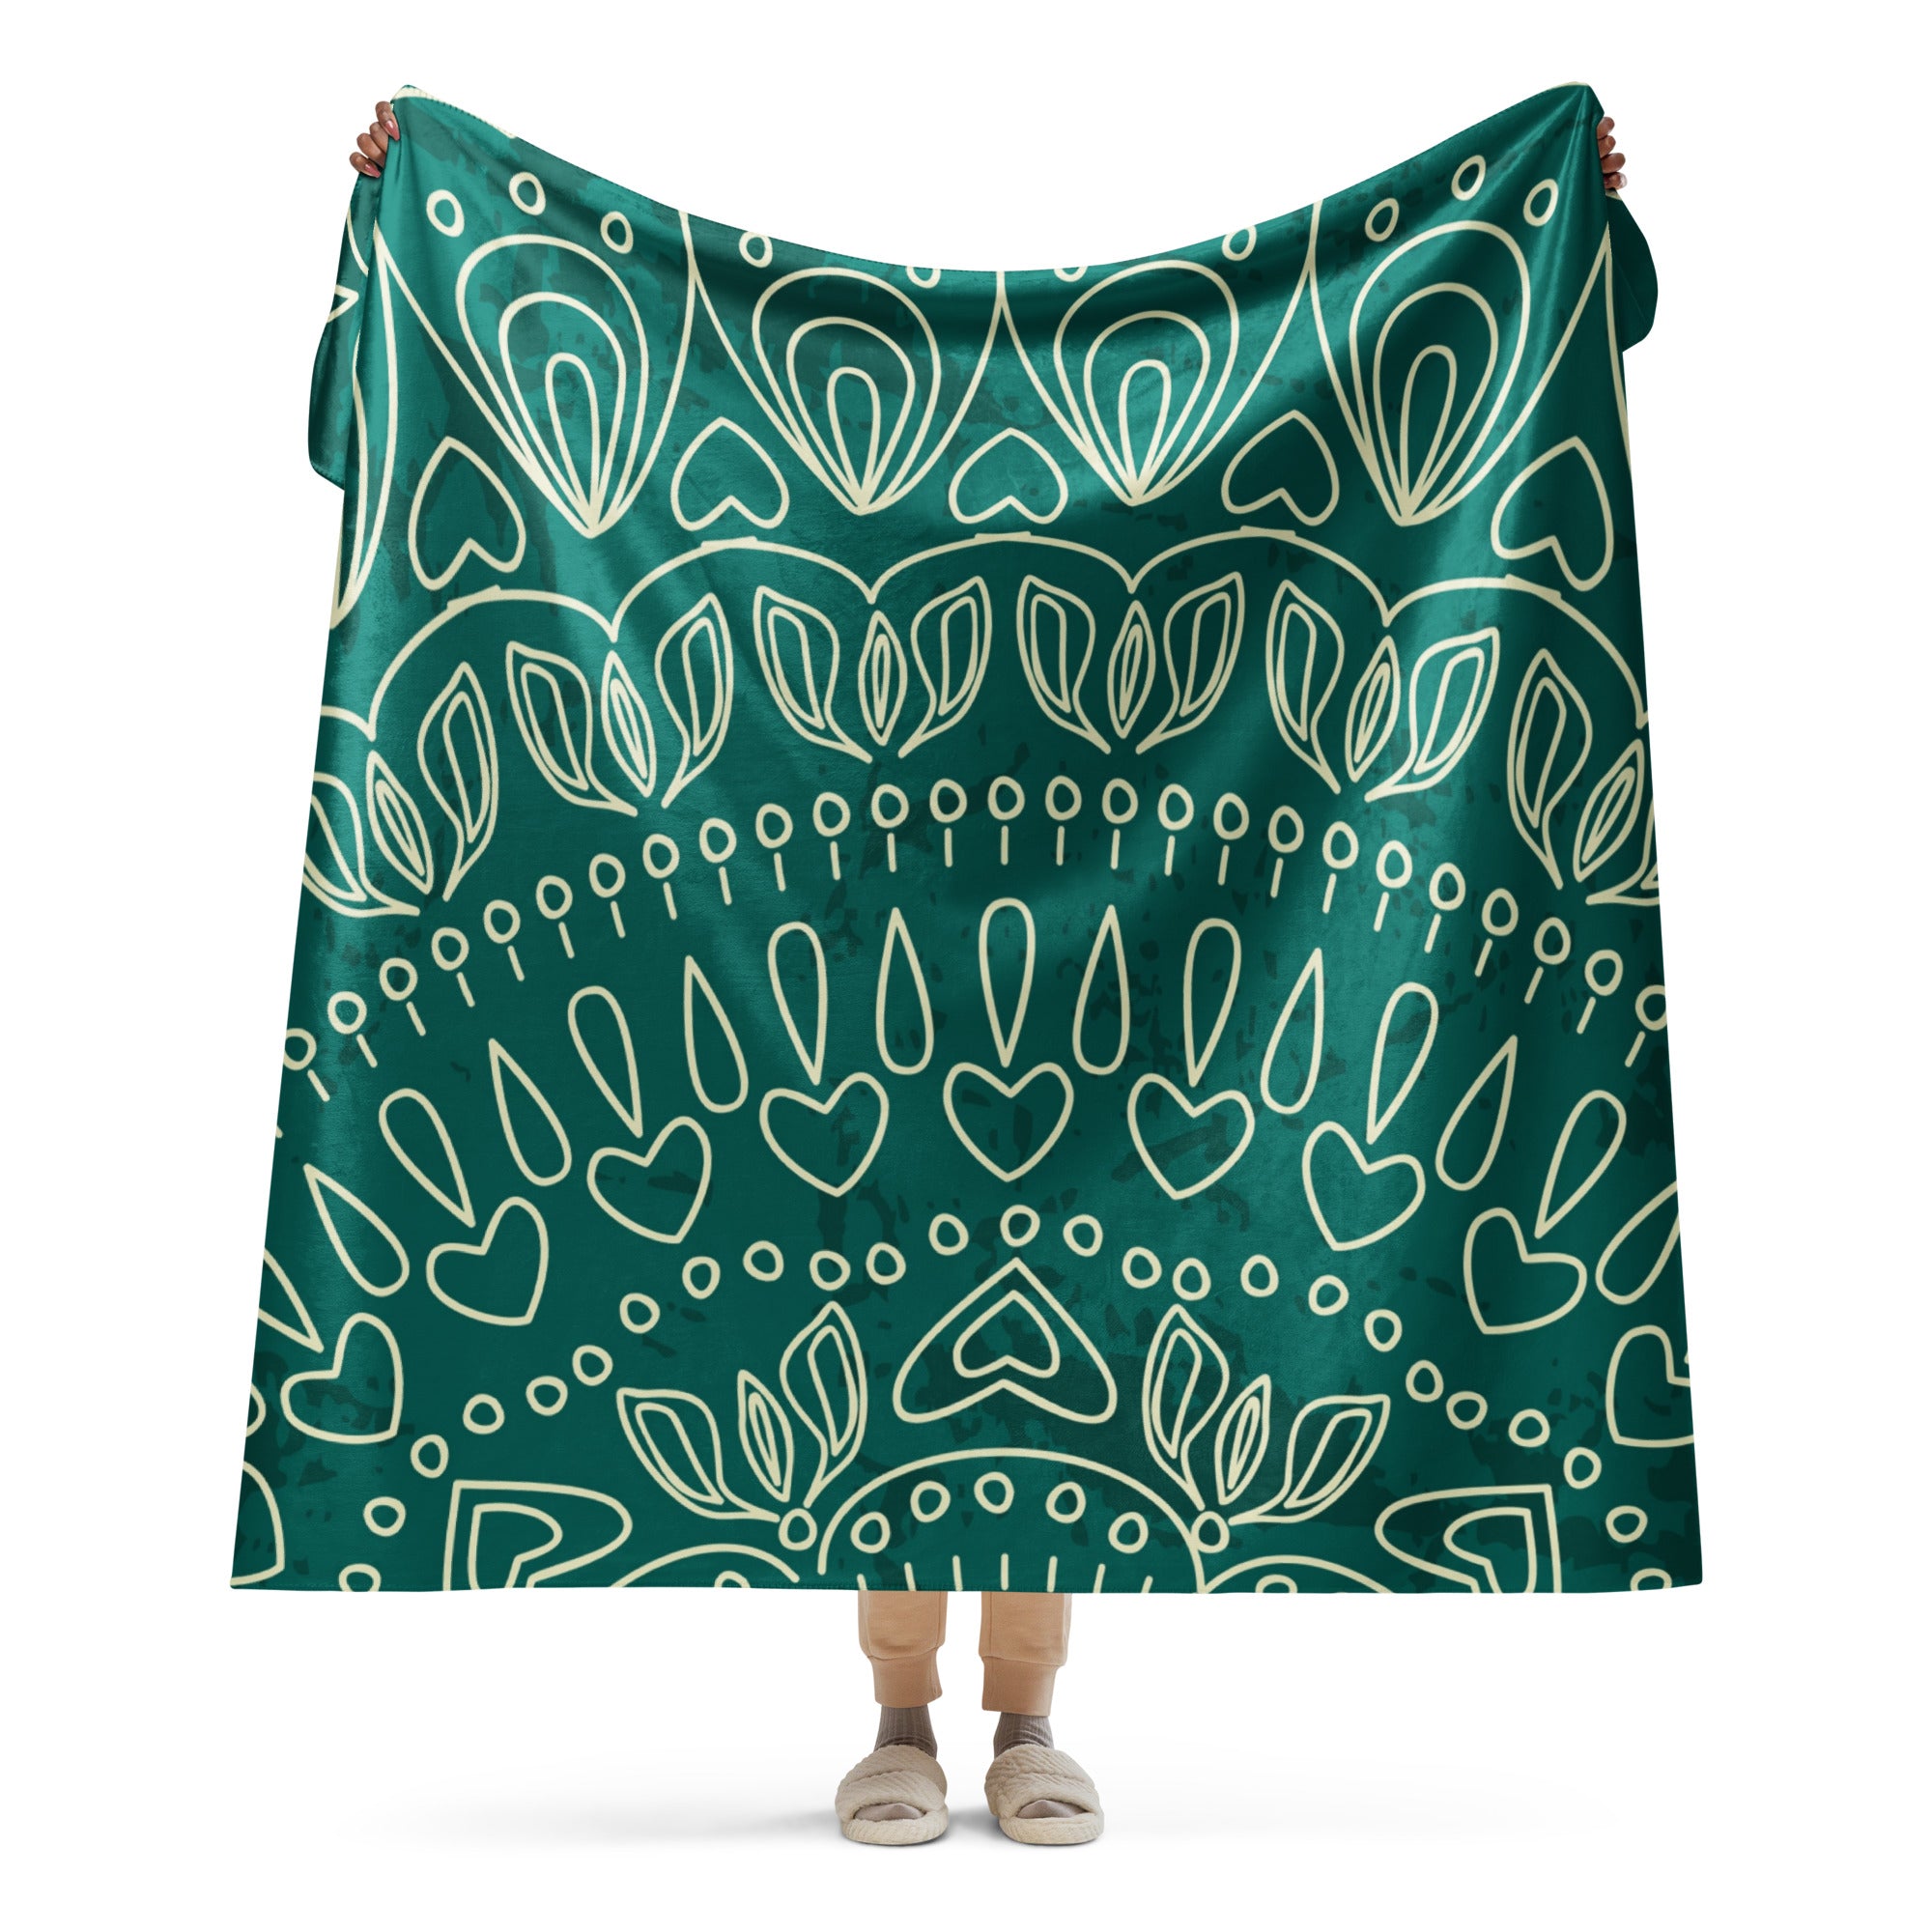 Mandala Sherpa blanket